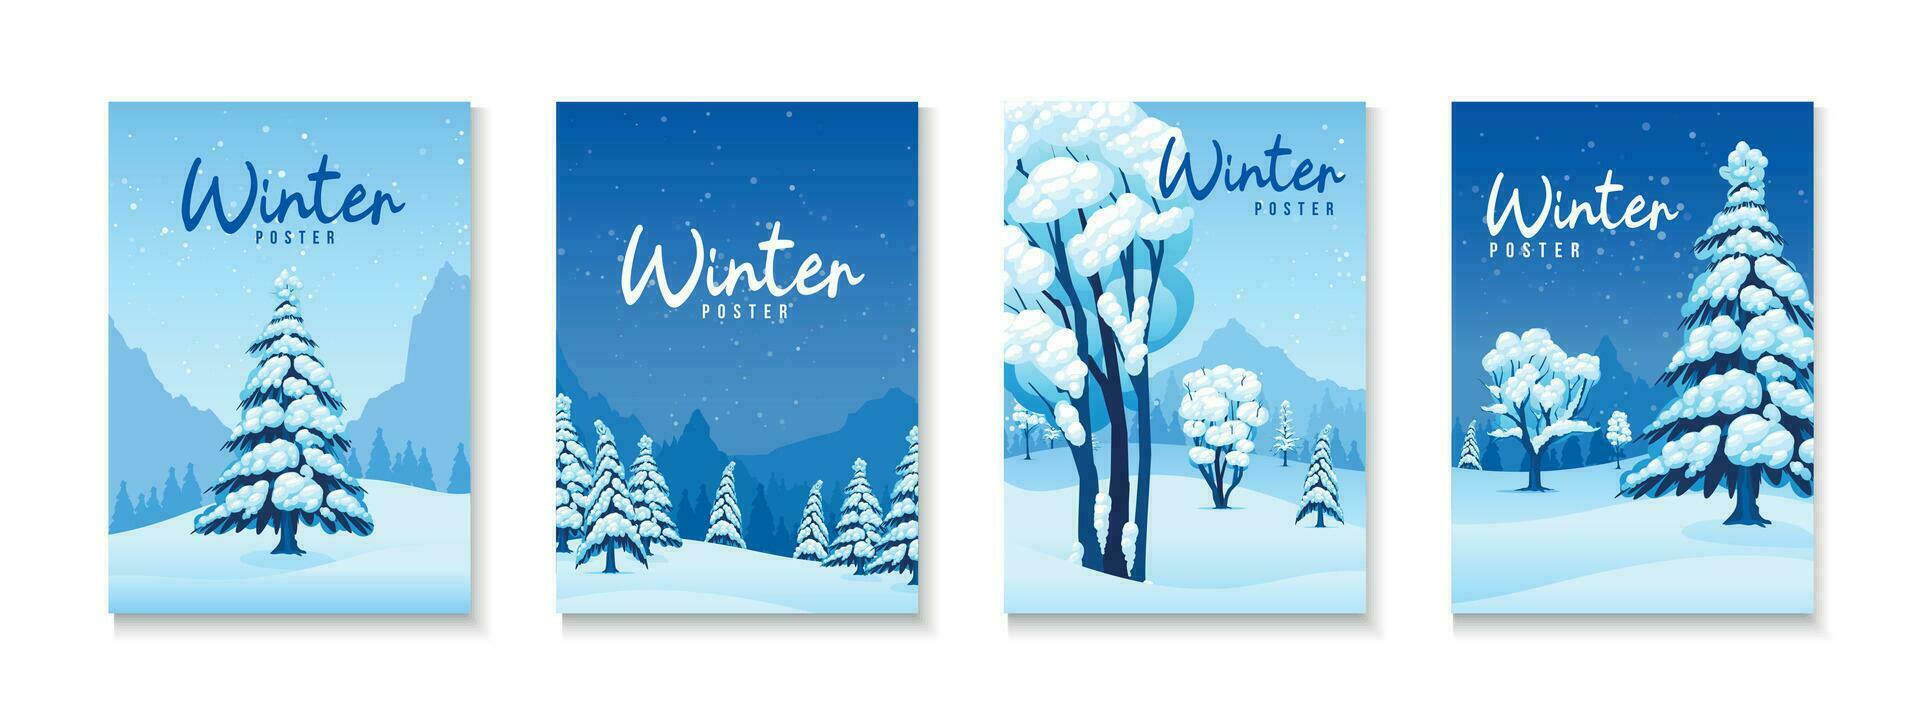 Winter Posters Set vector